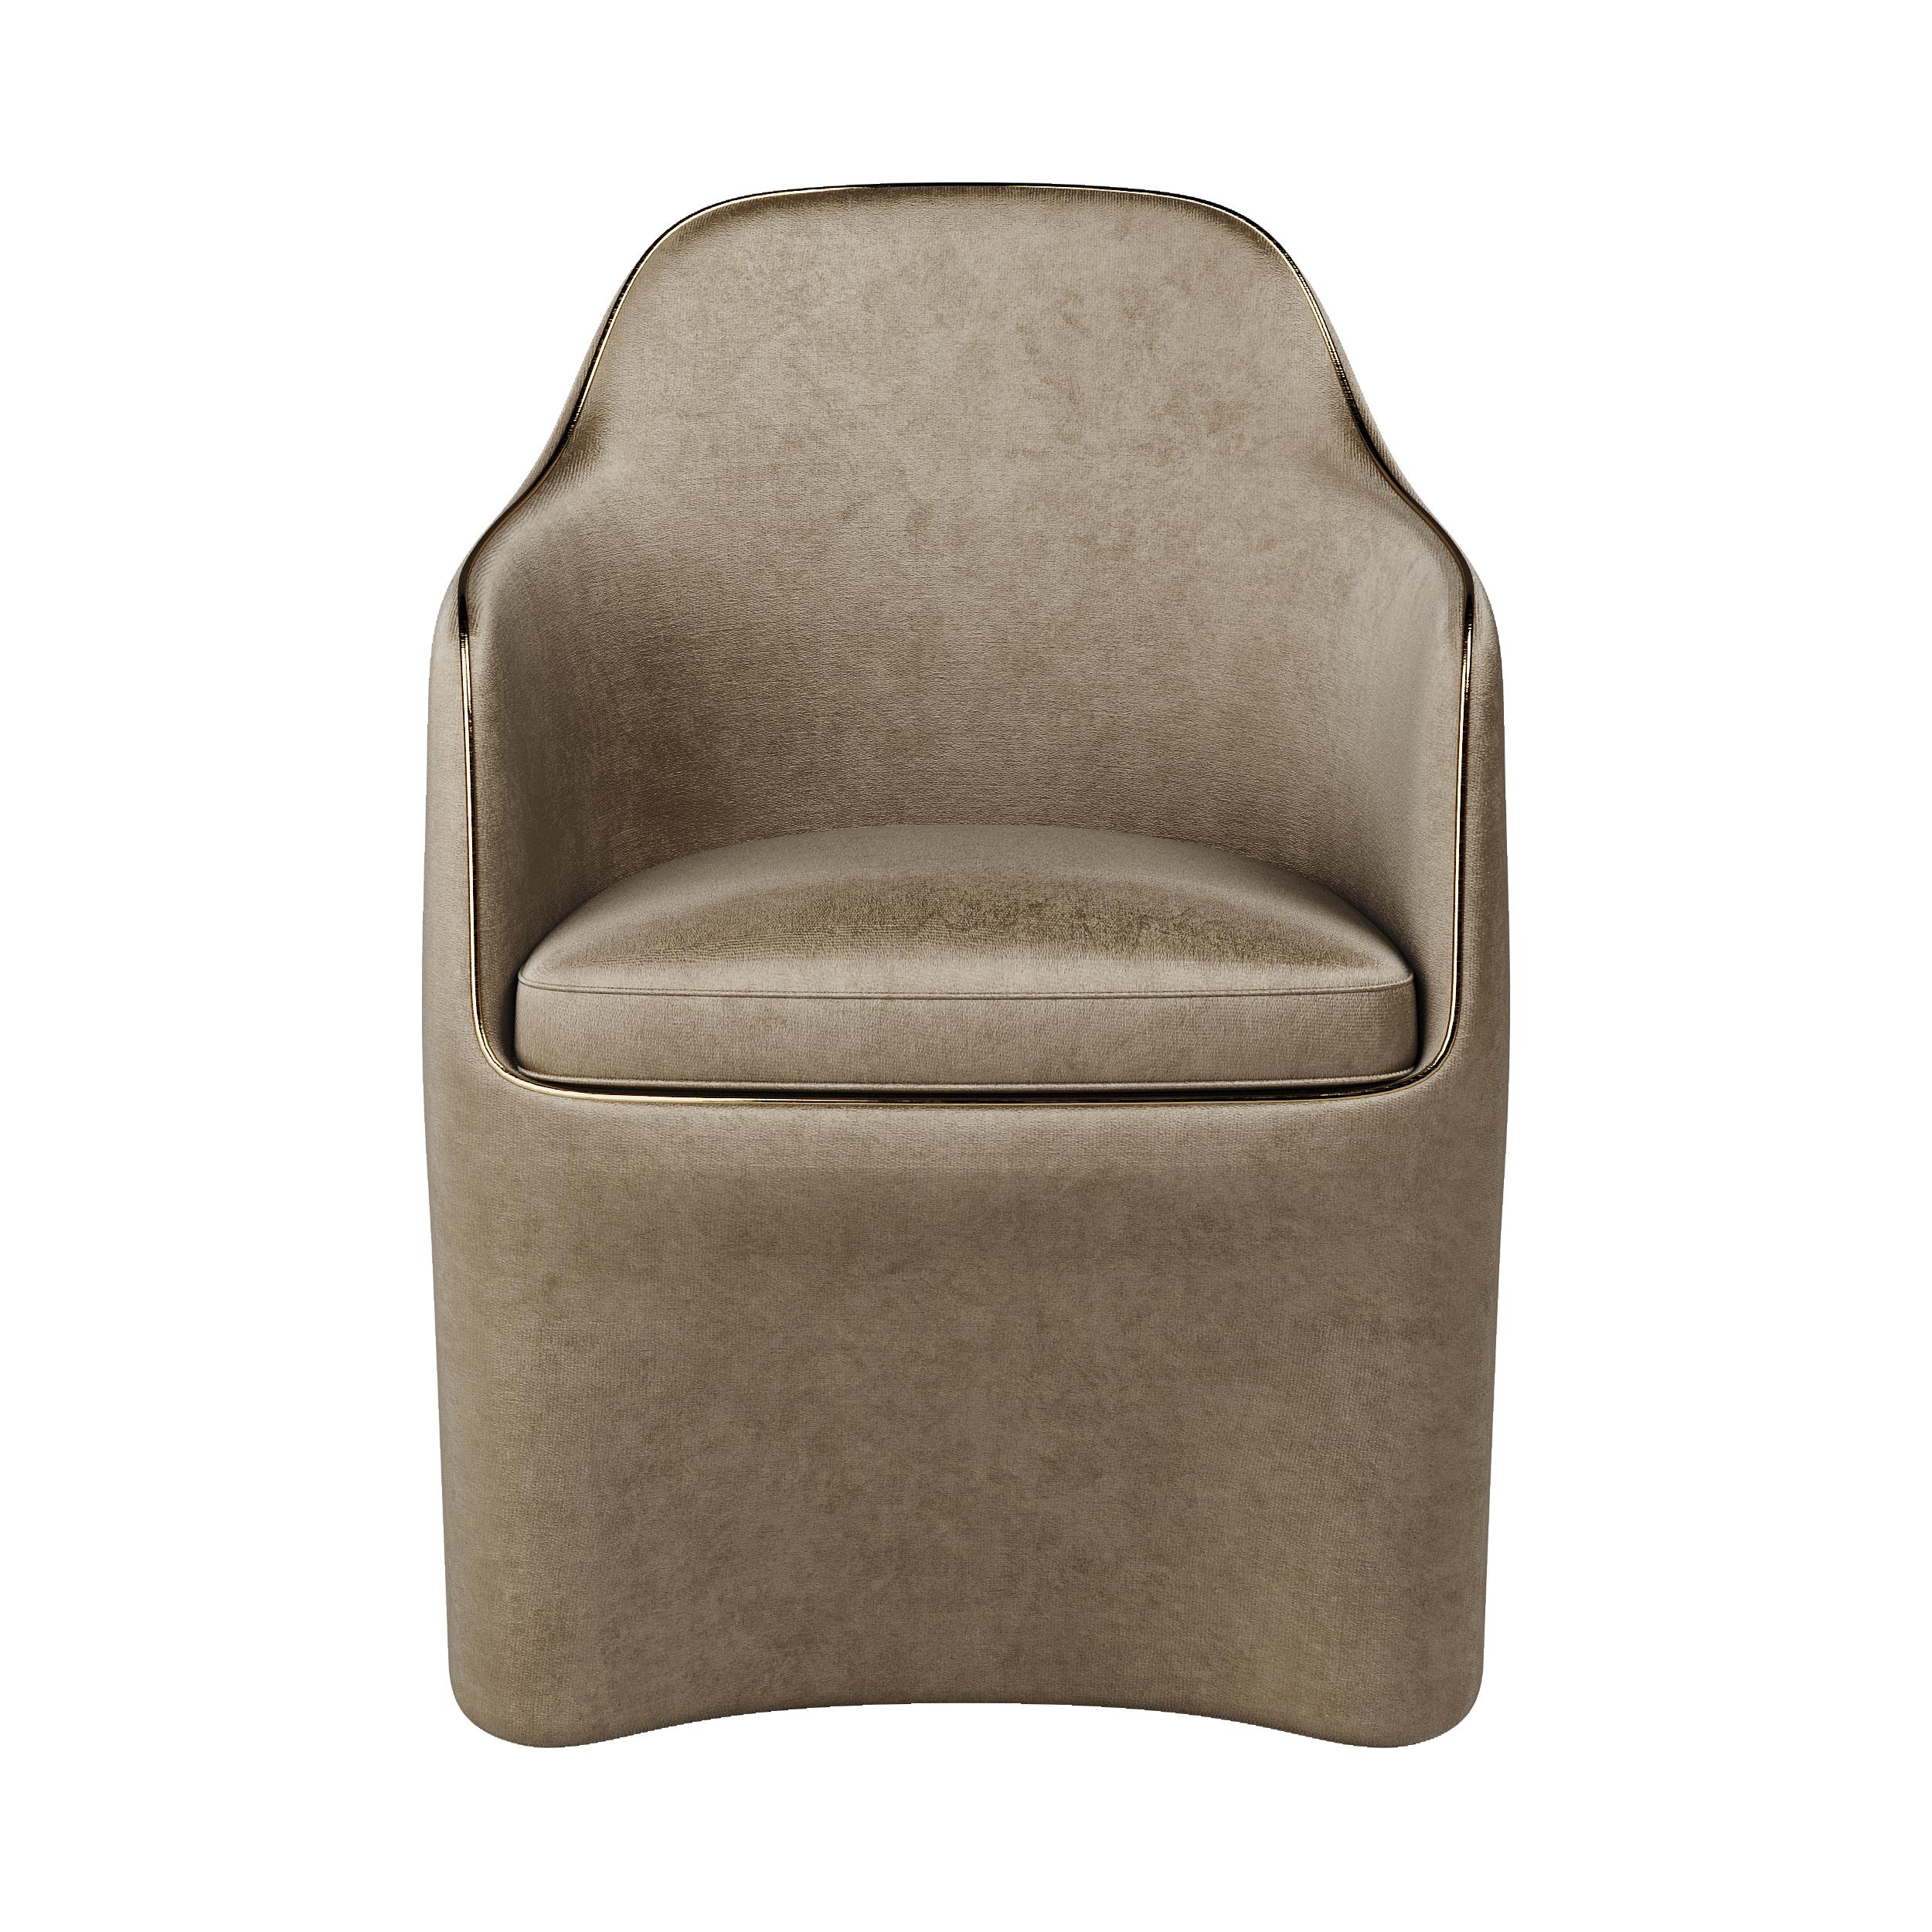 21. Jahrhundert Art Deco Elie Saab Maison bronzierter Samt Elite Esszimmerstuhl, Italien

Der Elite Dining Chair ist ein zeitloser Klassiker, der sich durch exklusive Details und die exquisite Verarbeitung seiner futuristischen Linien auszeichnet.